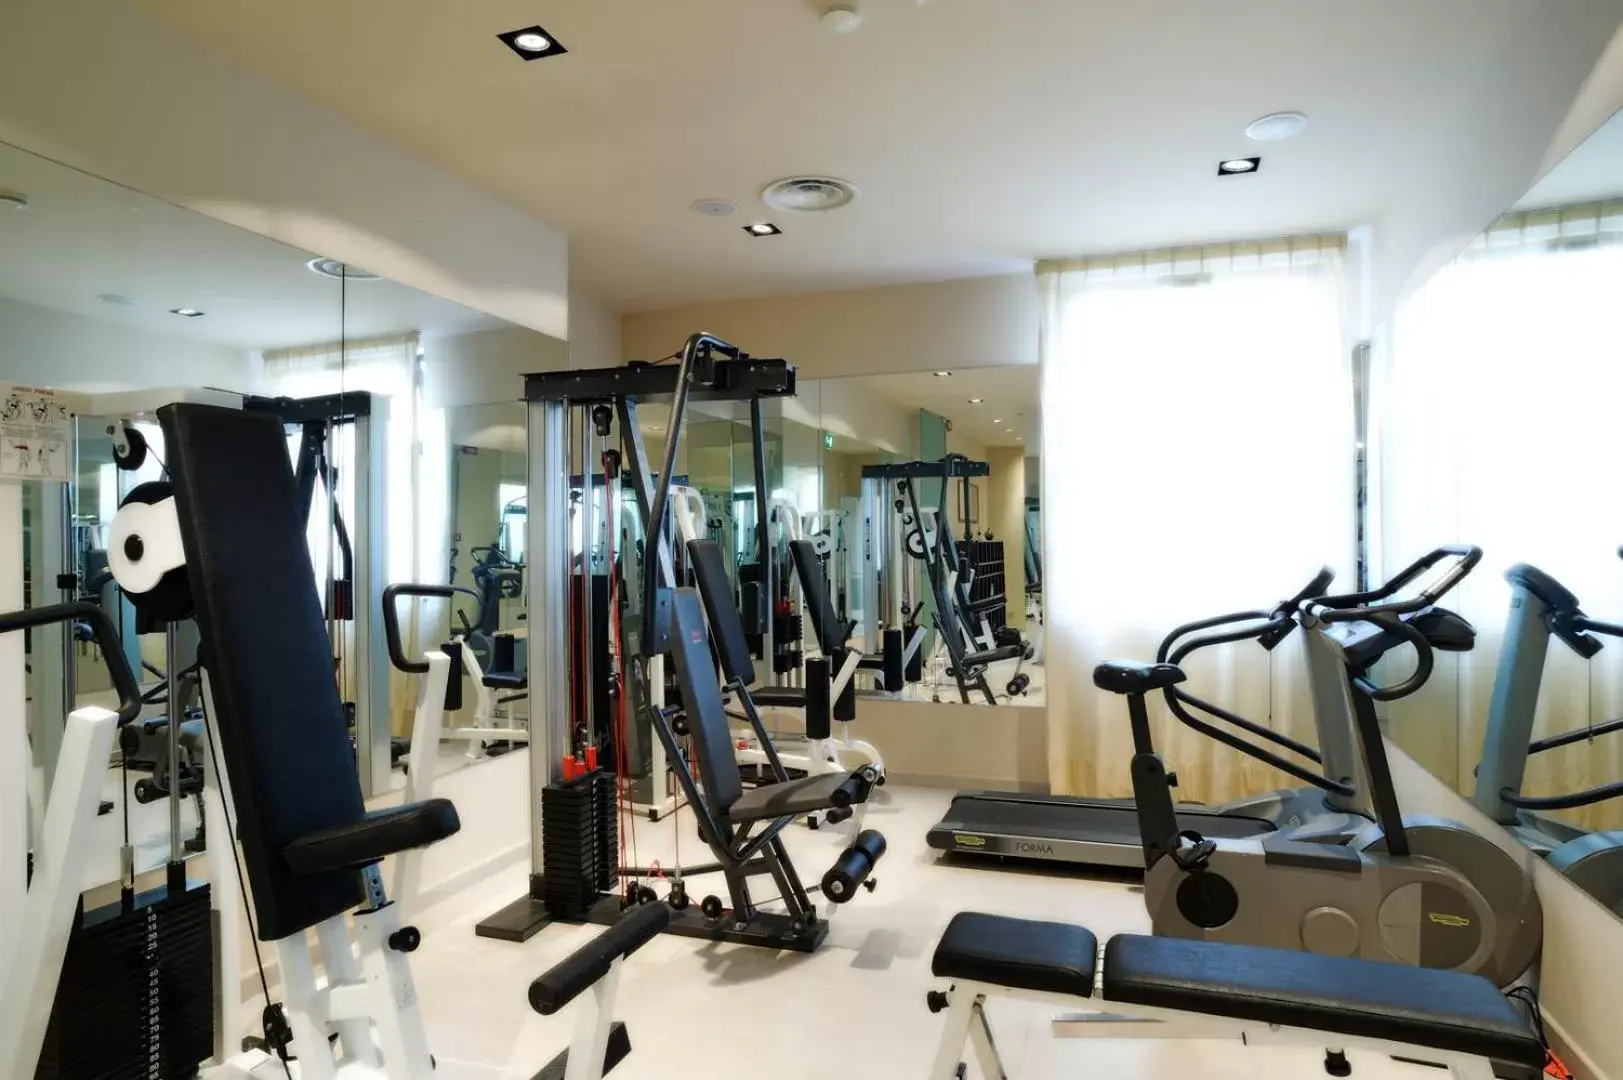 Fitness centre/facilities, Fitness Center/Facilities in Grand Hotel Mediterranee